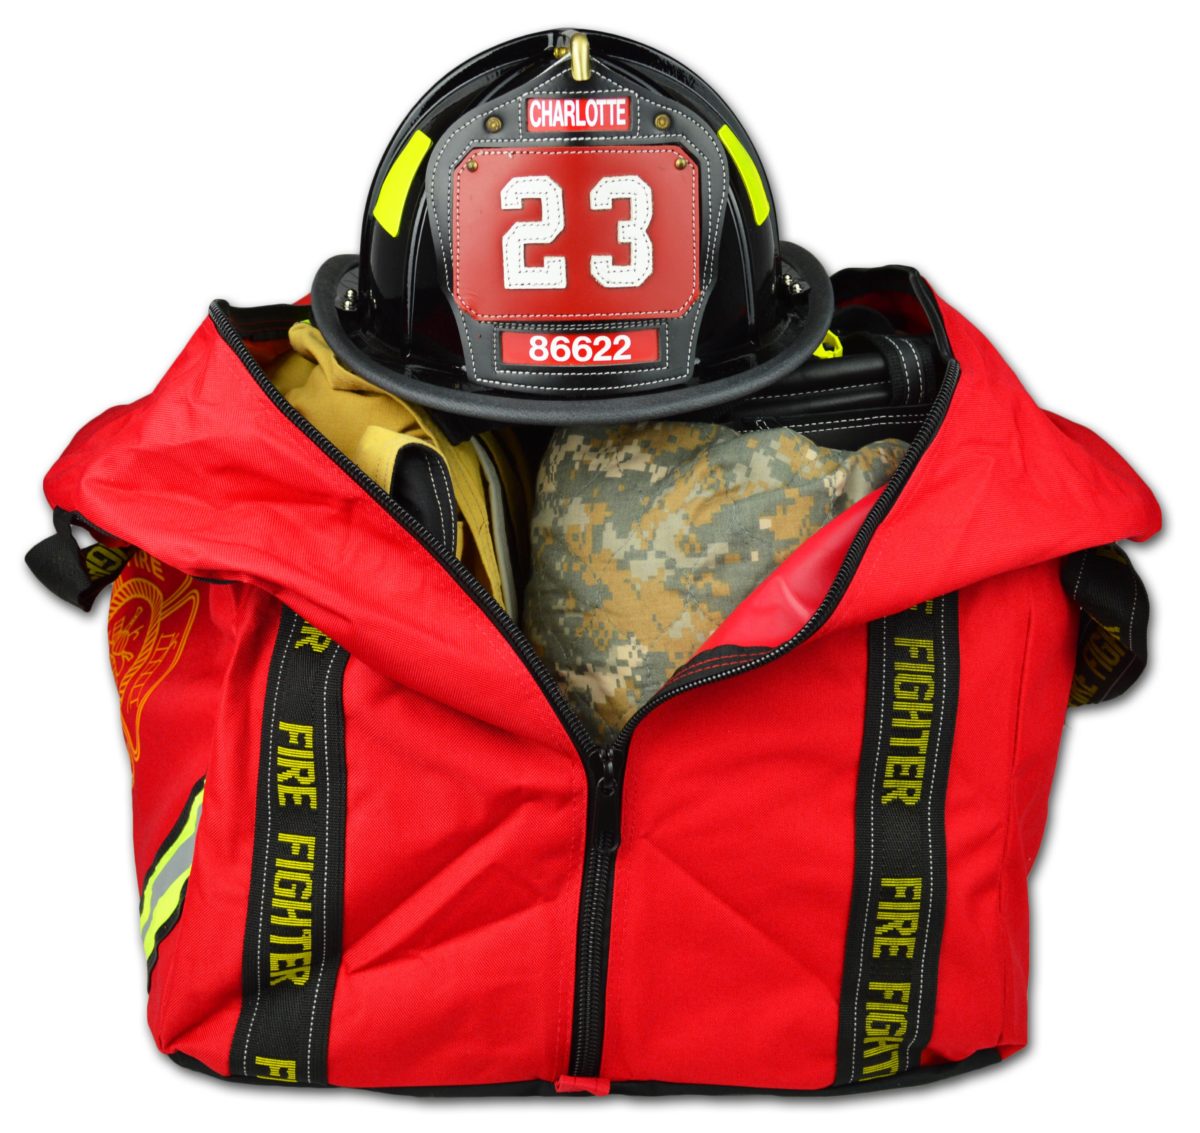 firefighter fireman compact boot turnout gear bag lightning x lxfb70